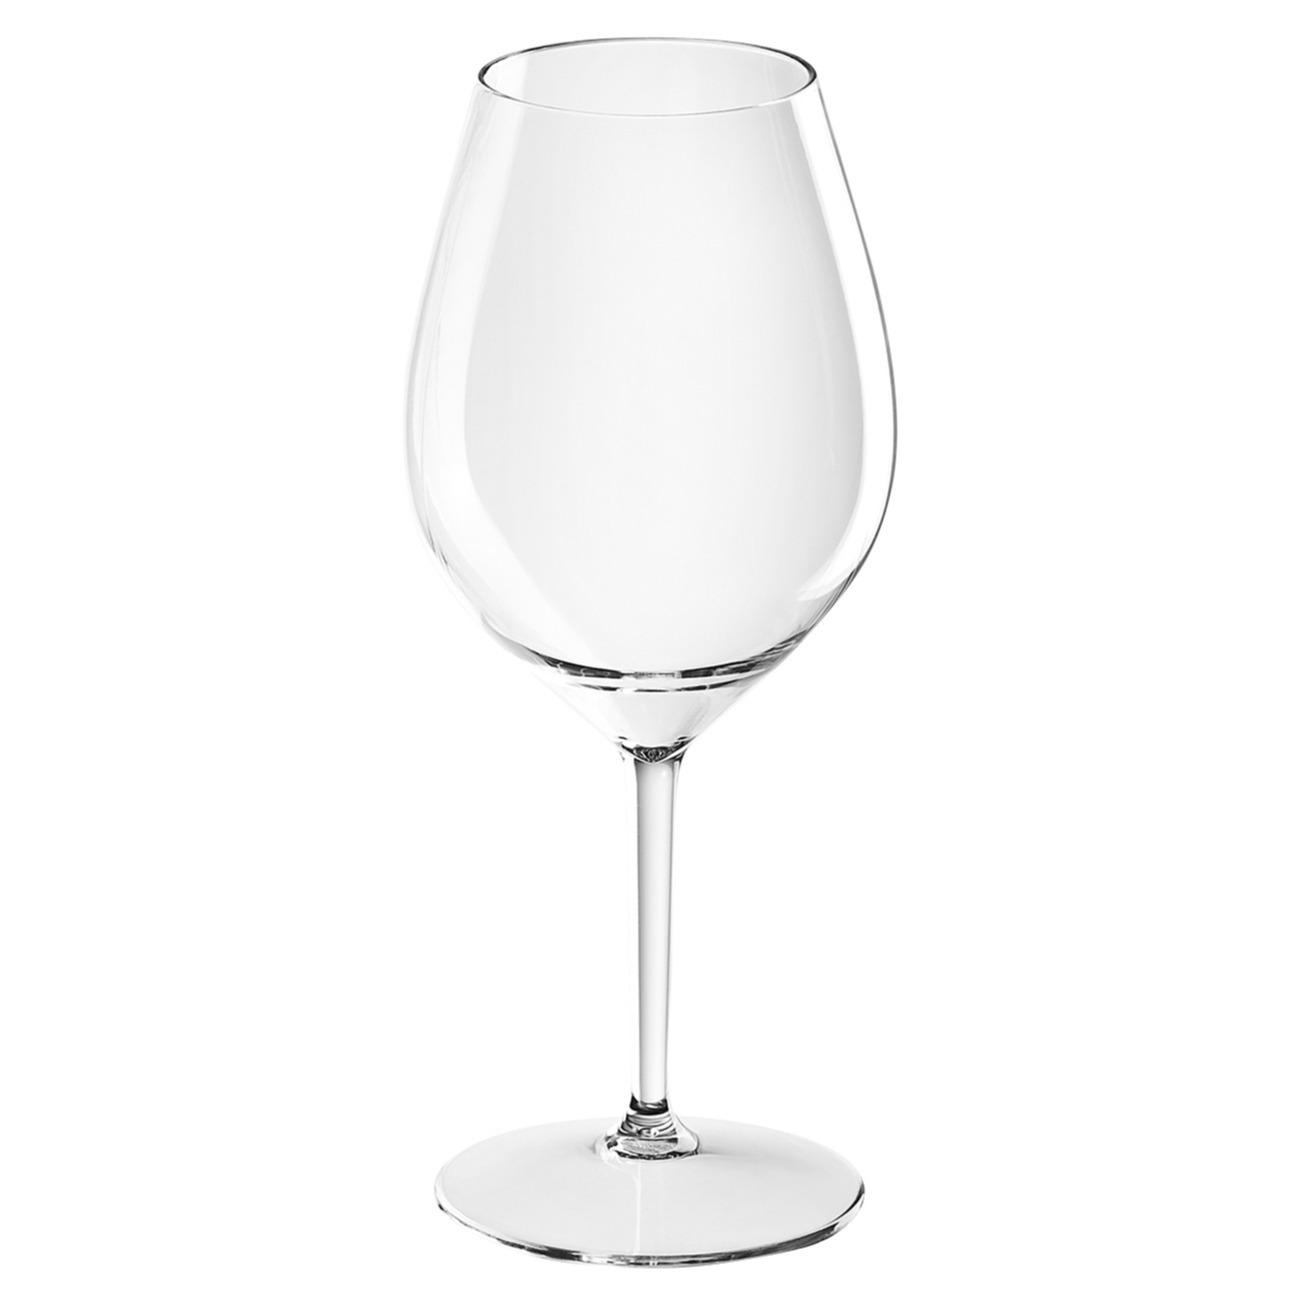 1x Witte of rode wijn wijnglazen 51 cl-510 ml van onbreekbaar transparant kunststof